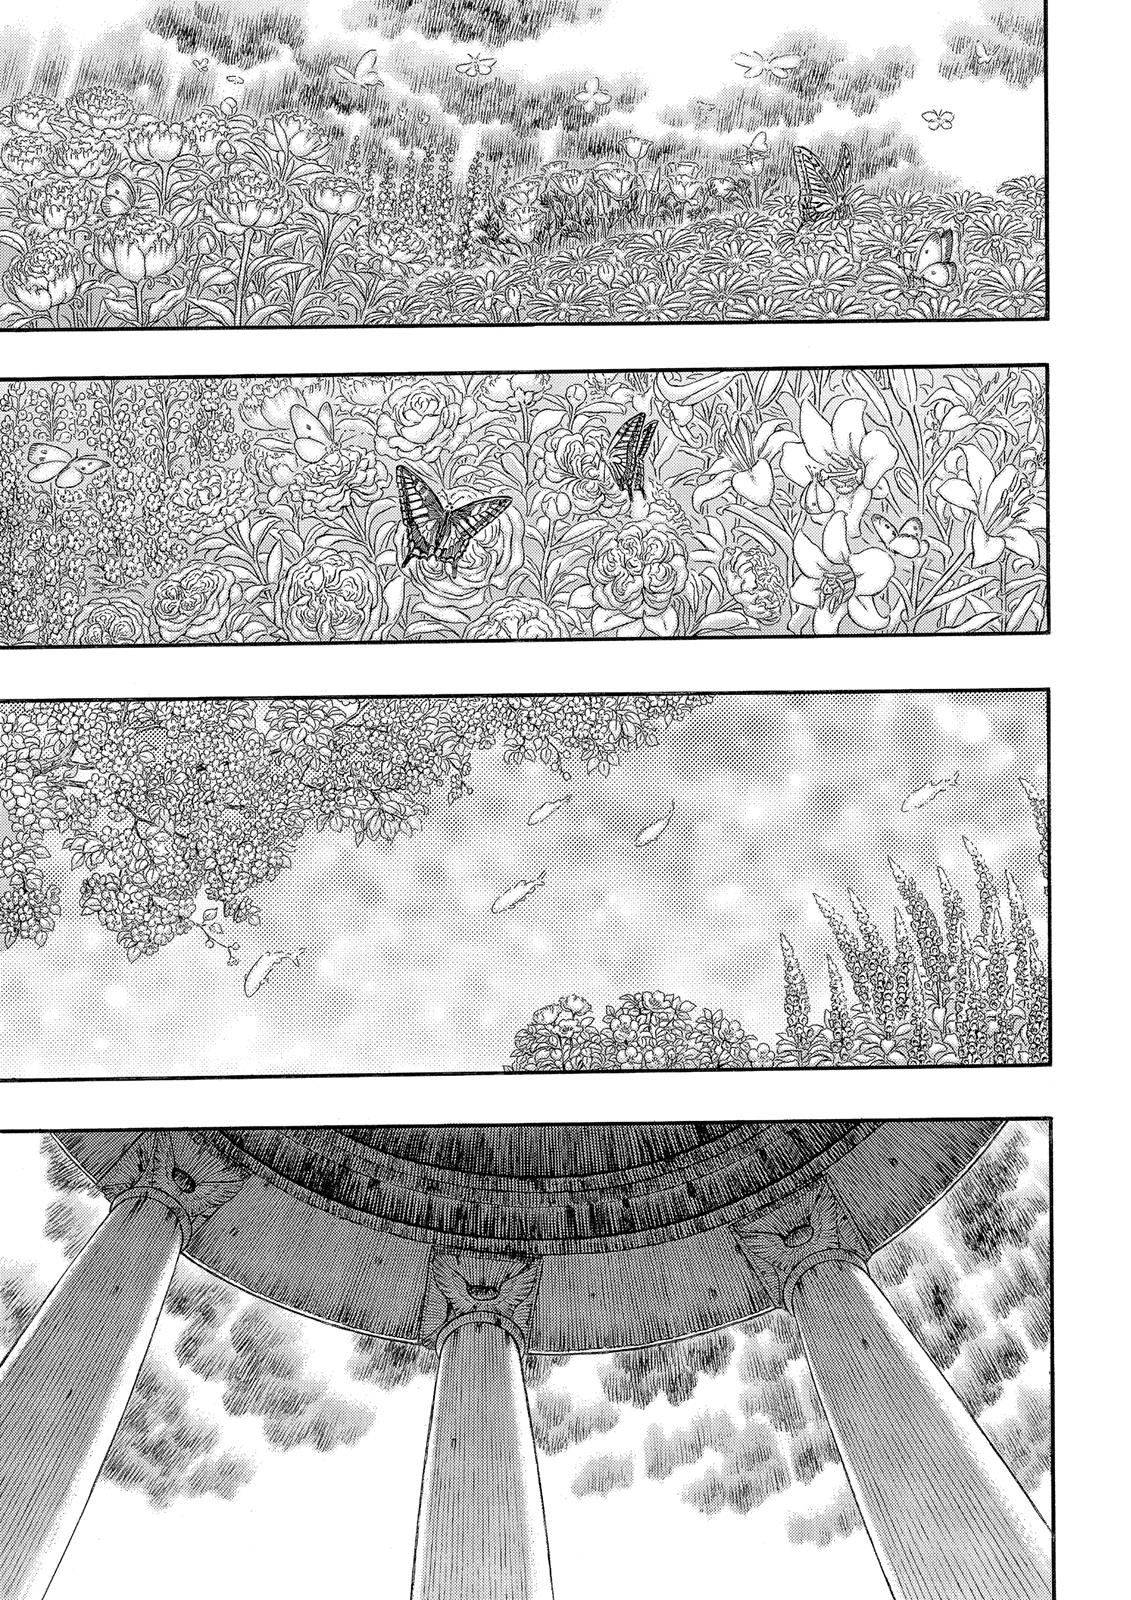 Berserk Manga Chapter 337 image 02